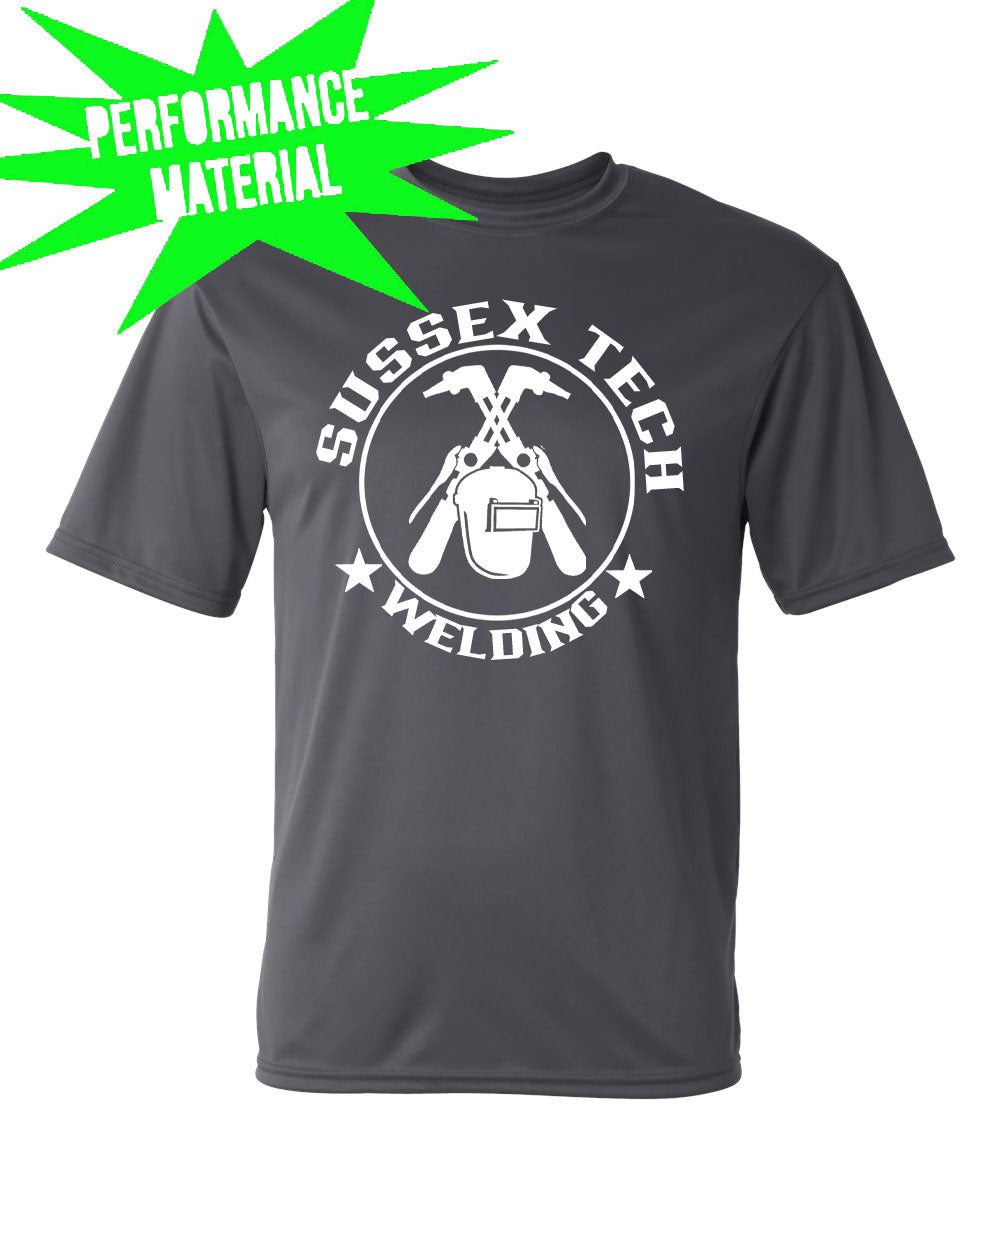 Sussex tech Welding Performance Material design 6 T-Shirt